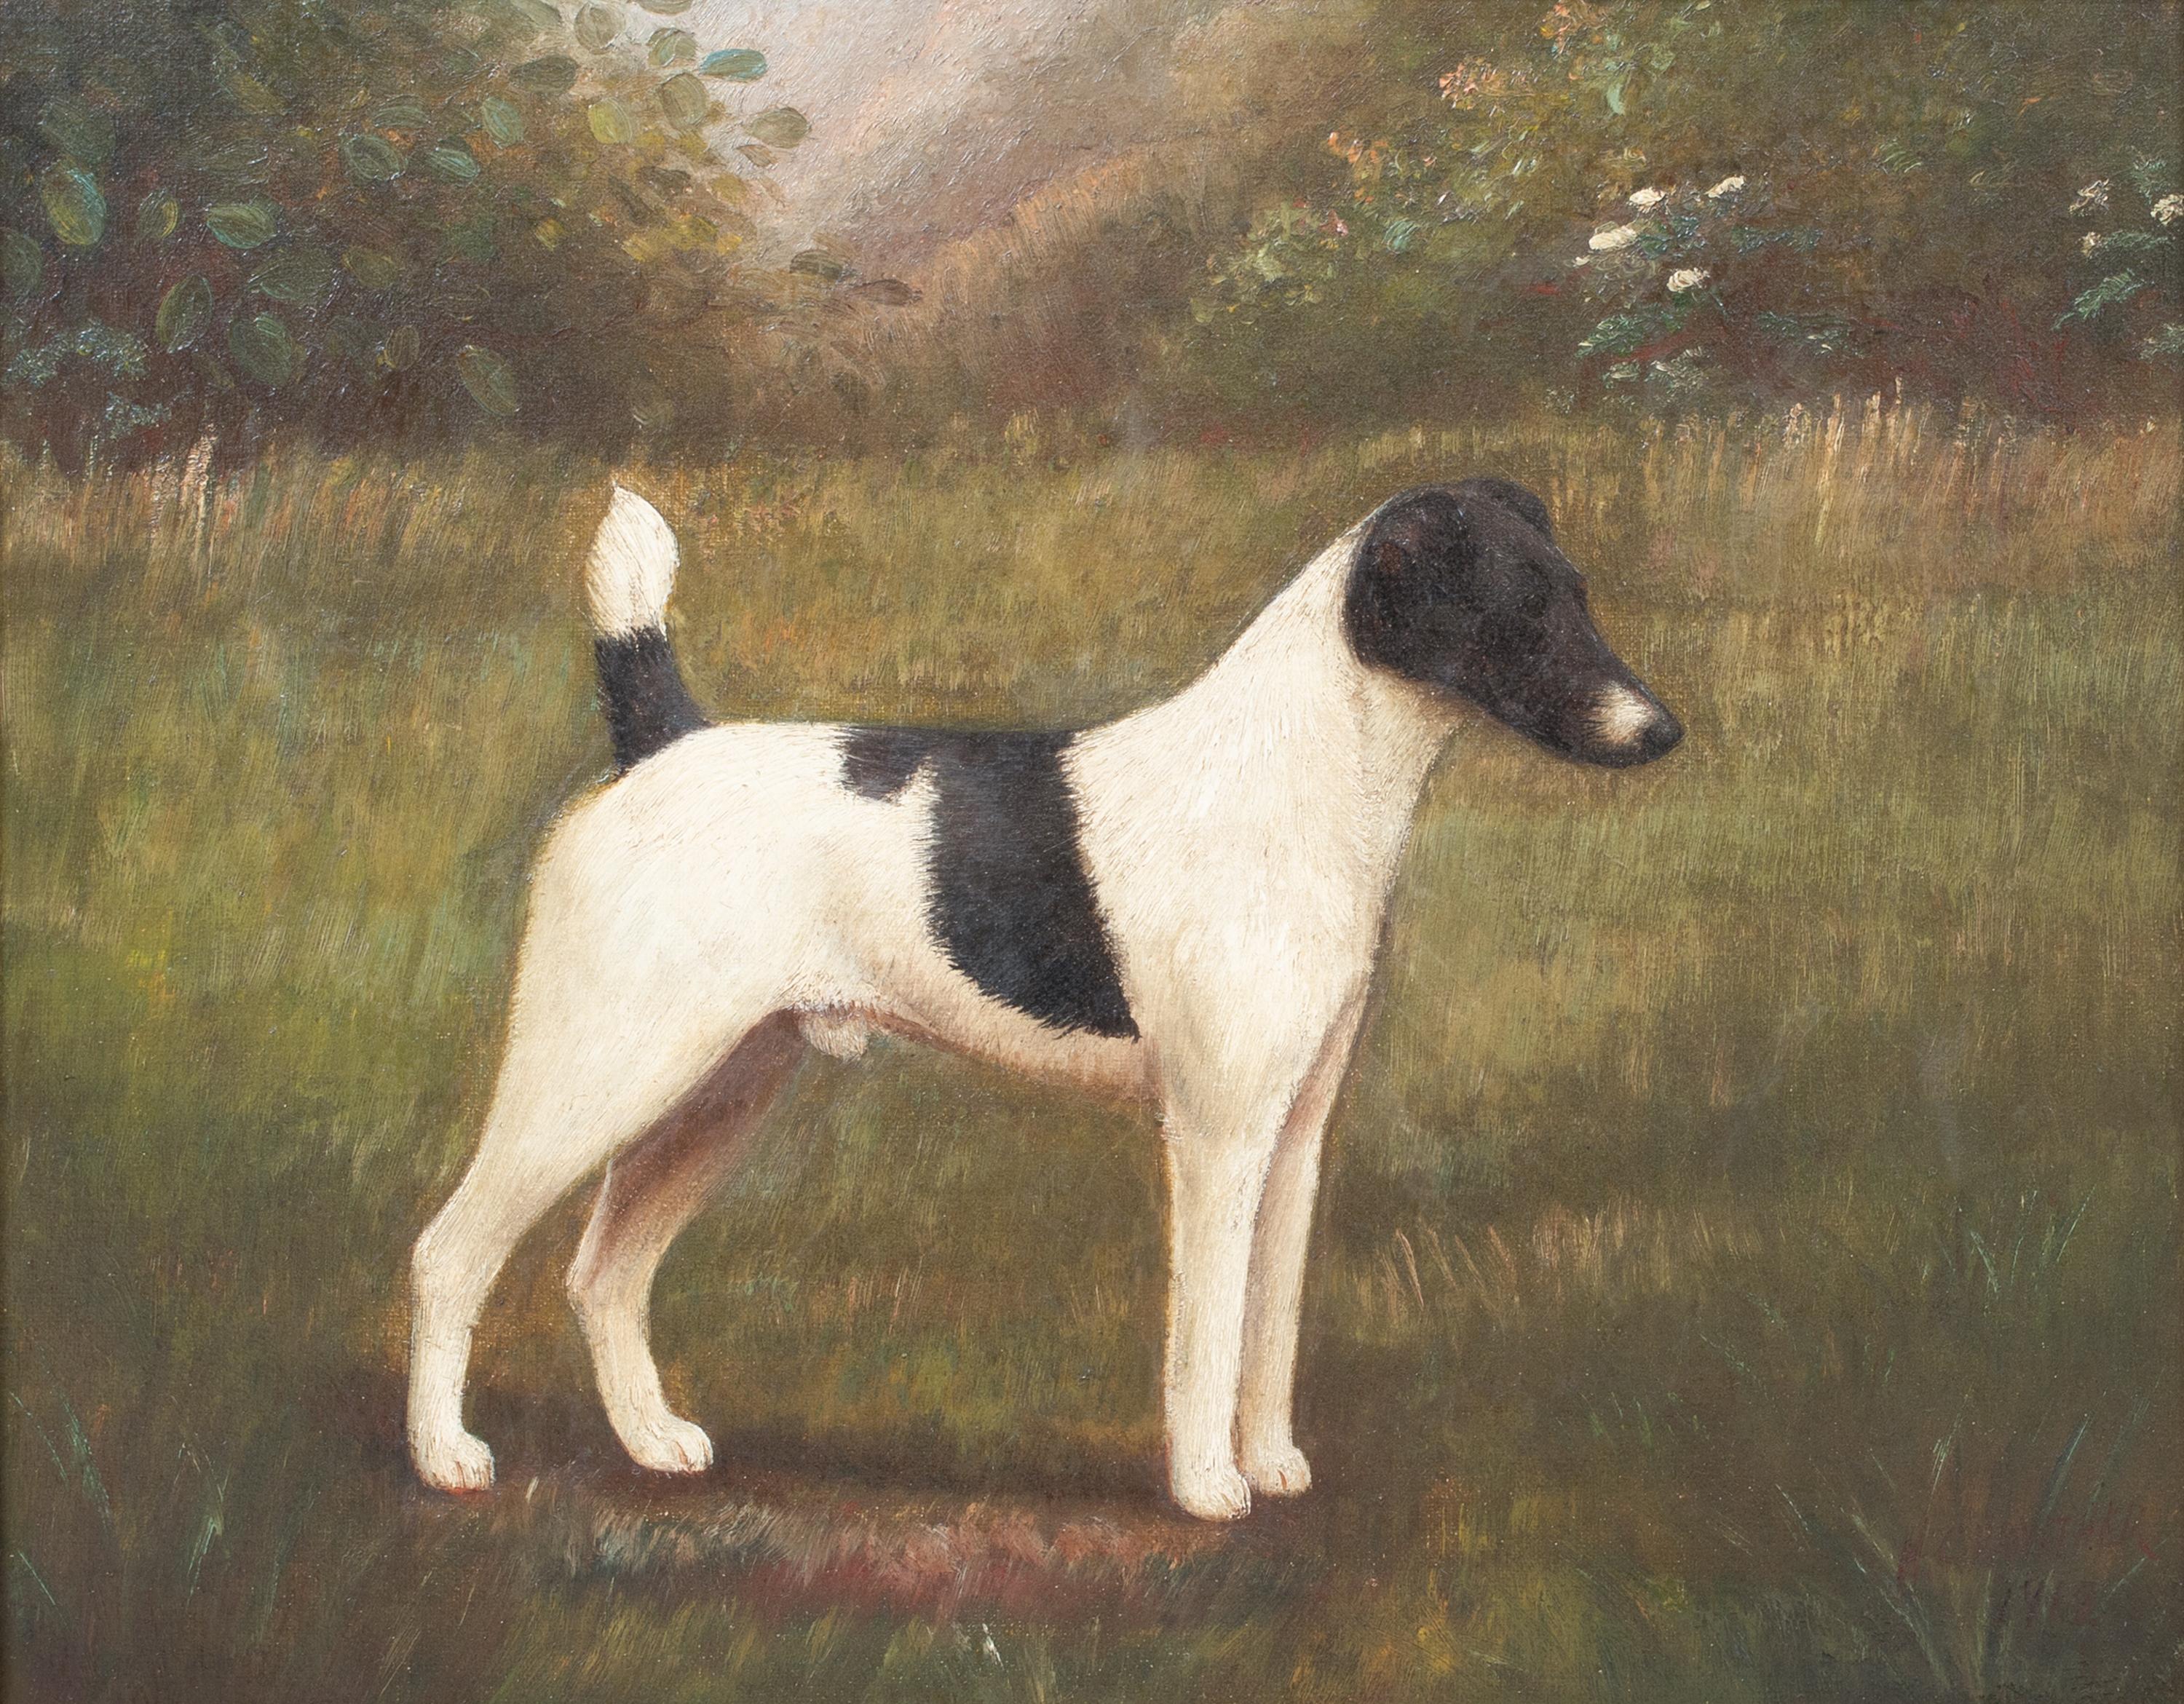 
Portrait d'un Jack Russell Terrier noir et blanc, 19e siècle 

par Henry CROWTHER - Peintre de chiens du 19ème siècle

Portrait anglais du 19e siècle d'un Jack Russell Terrier noir et blanc, huile sur toile de Henry Crowthers. Excellent état et